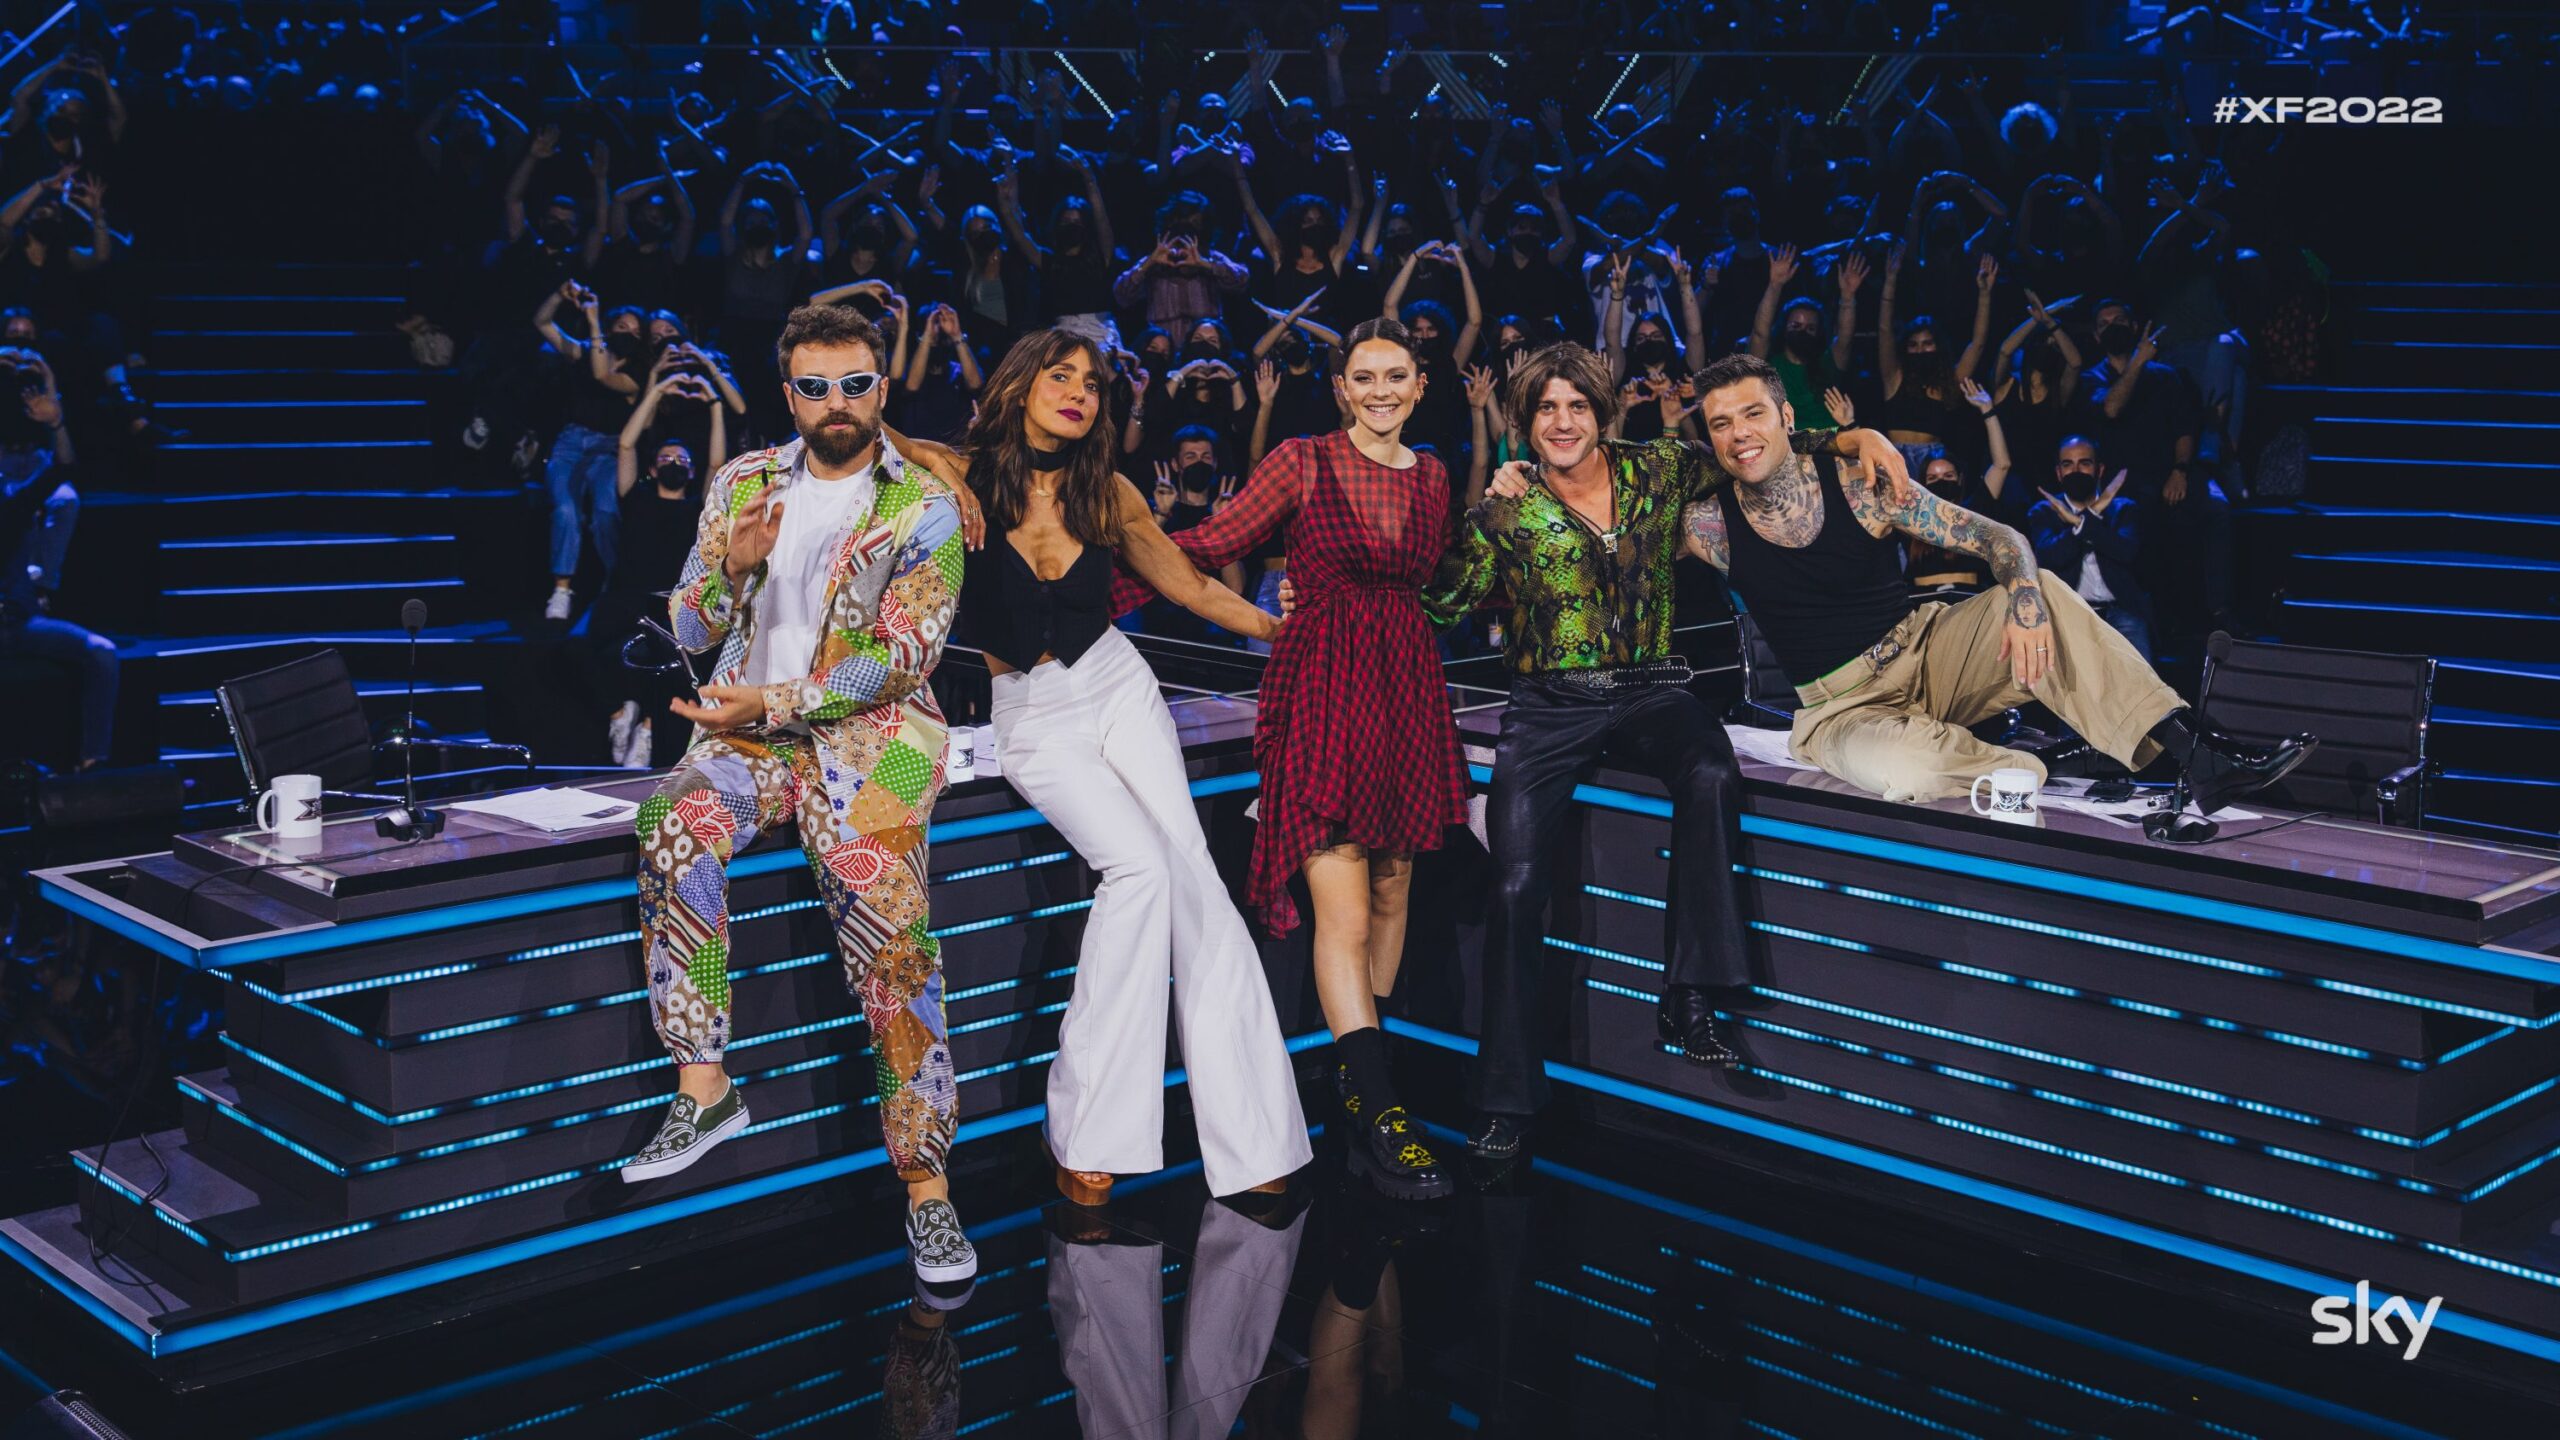 X-Factor 16, settima puntata. Continua anche sulla free la nuova edizione del talent show condotto da Francesca Michielin, in onda su Tv8